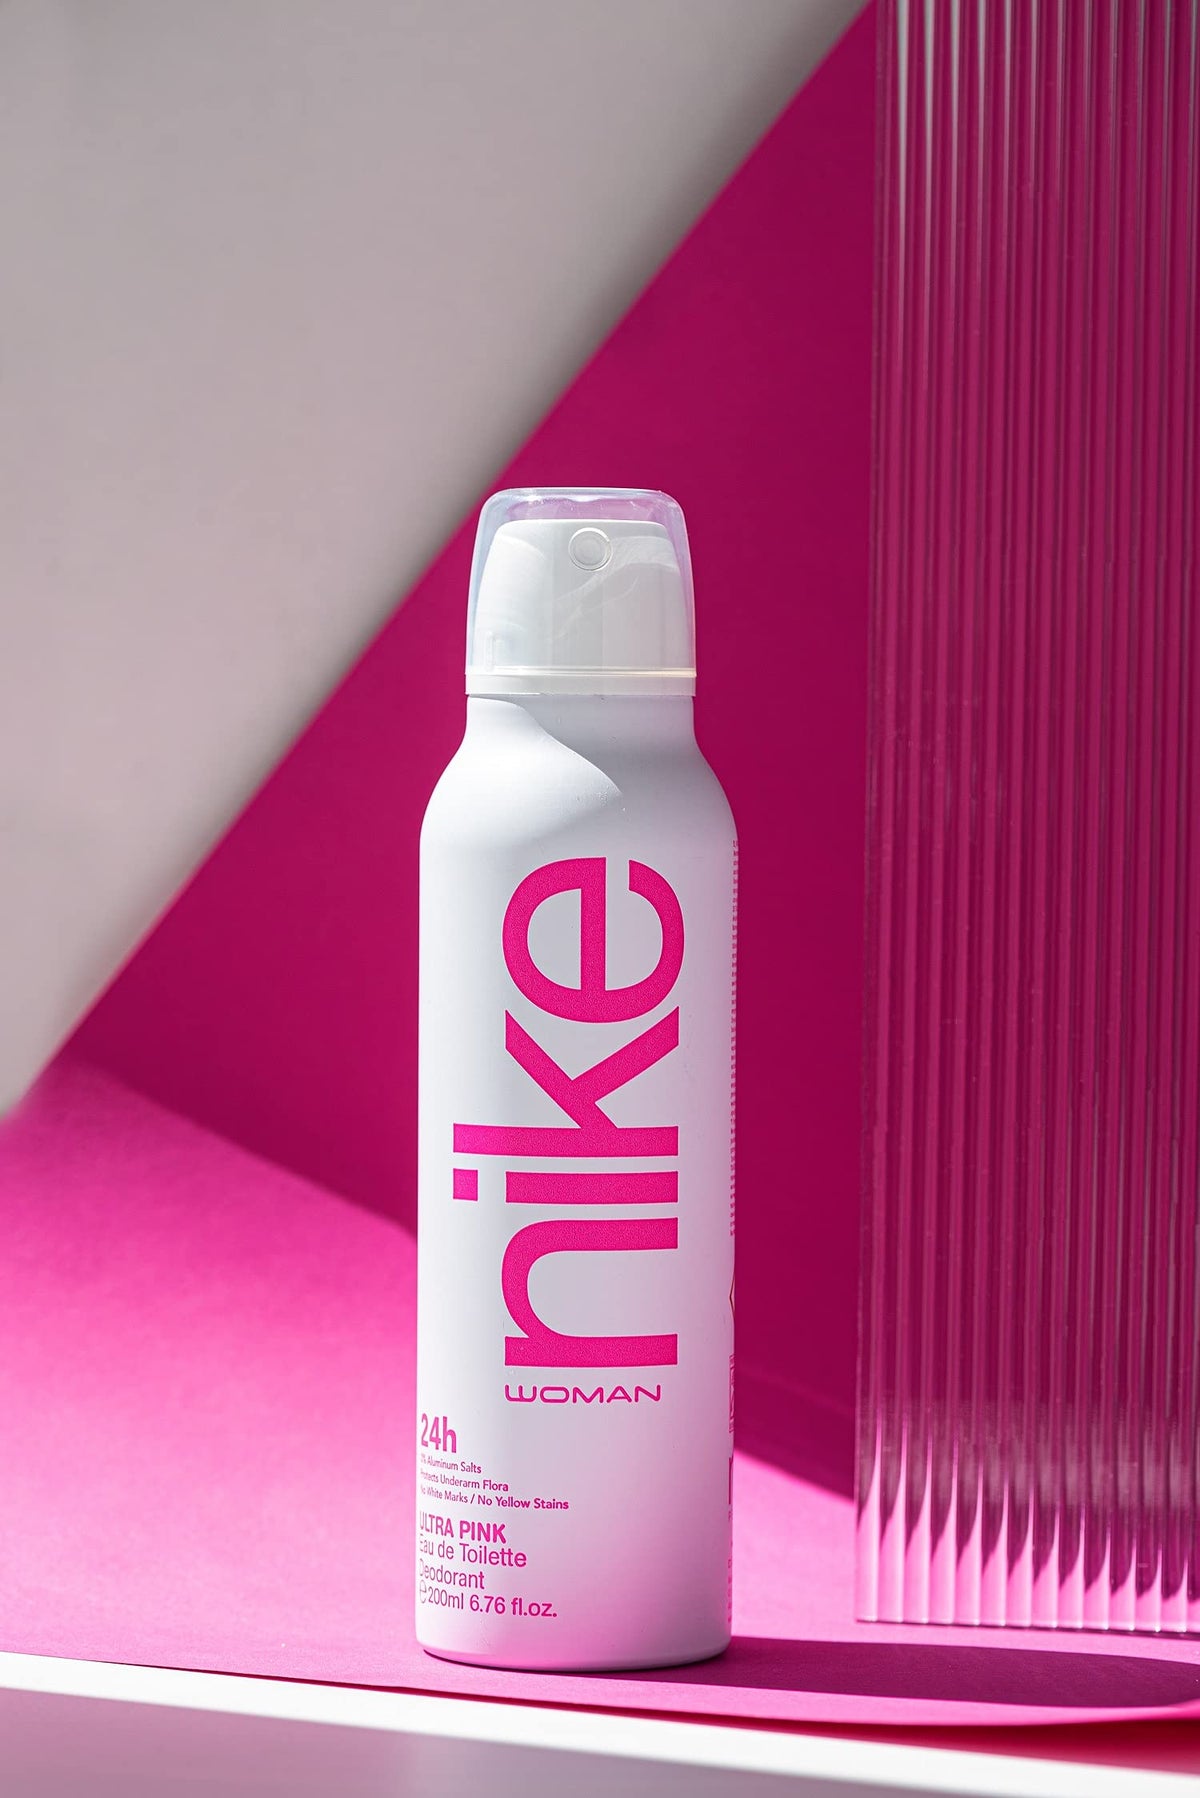 Nike Ultra Pink - Eau De Toilette Spray - For Women ,200ml